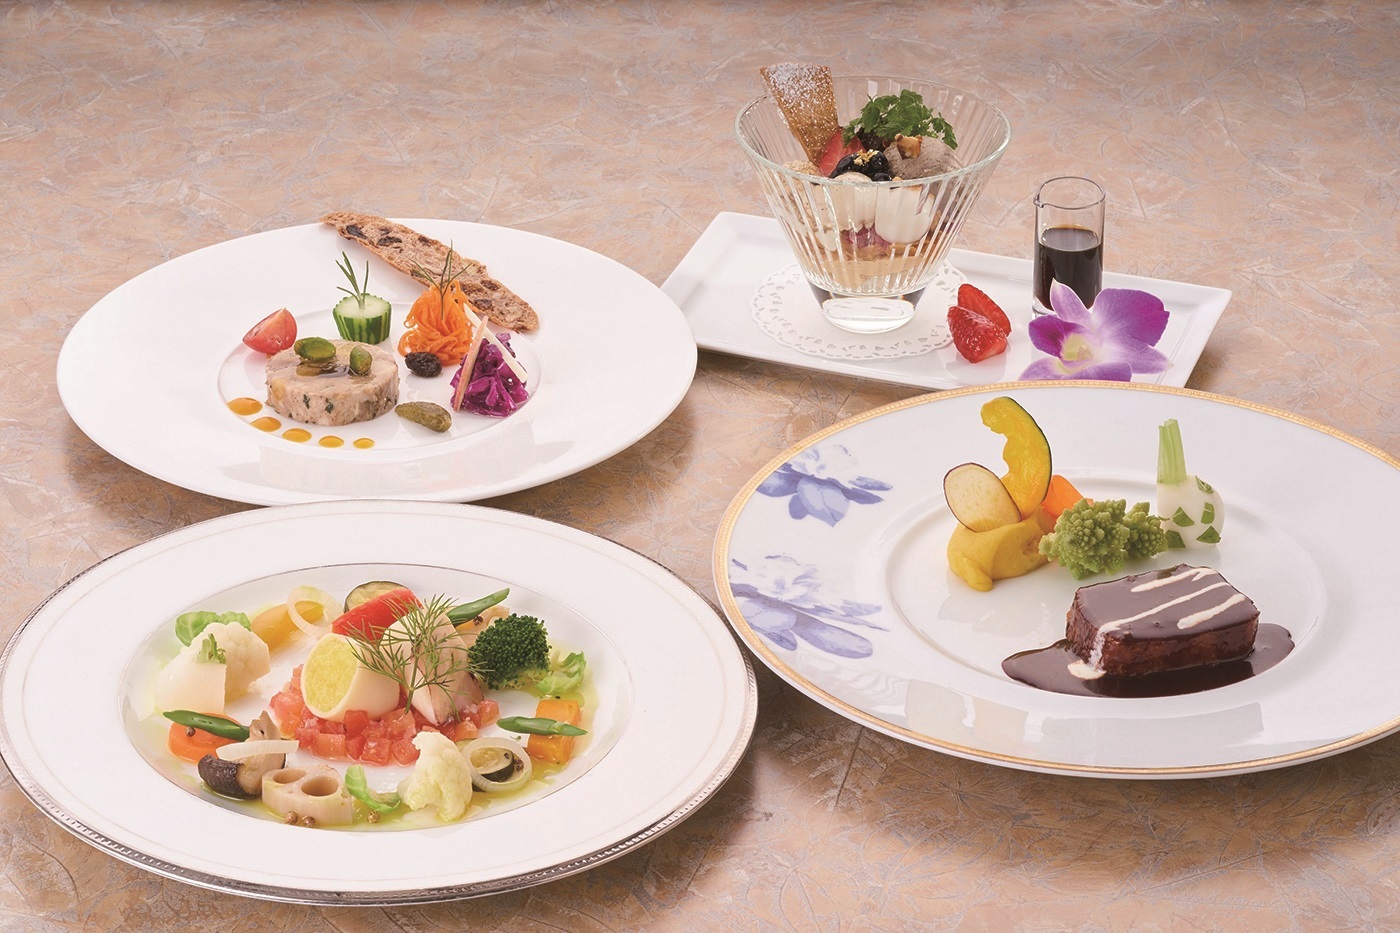 本場仕込のフランス料理が自慢のクラシカルなリゾートホテル♪ 神奈川県 箱根・湯河原への旅！おでかけプラン 夕食「フランス料理」 ツイン